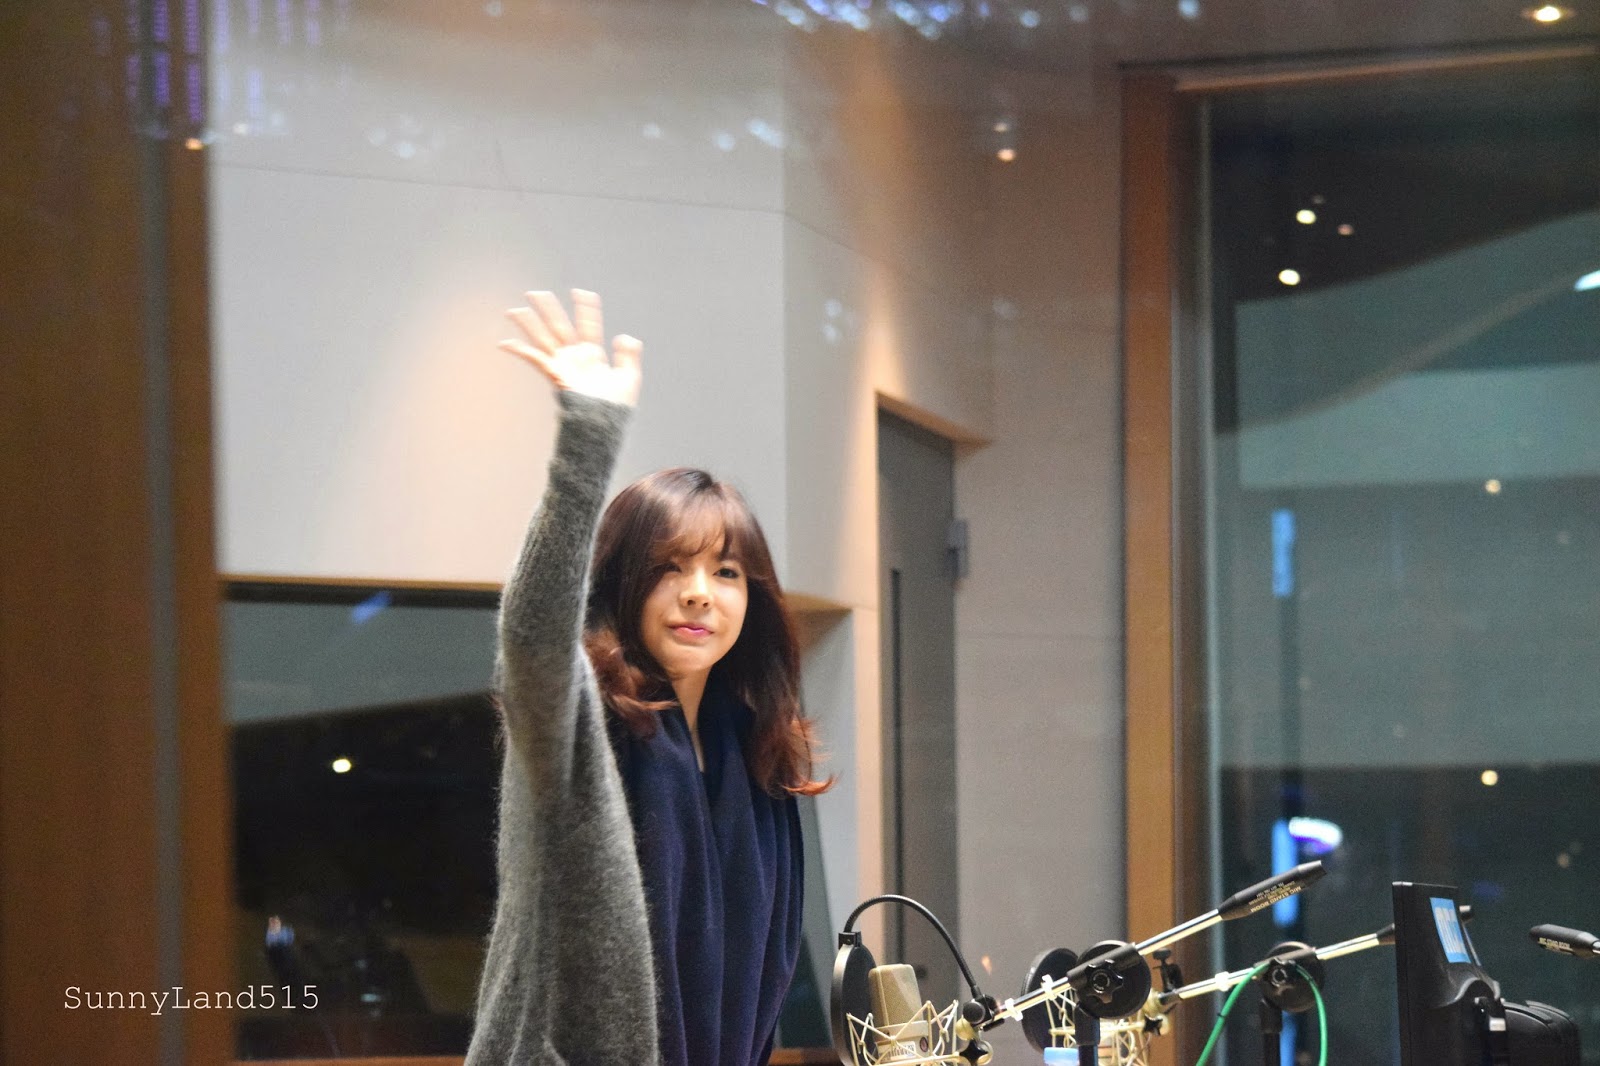 [OTHER][06-02-2015]Hình ảnh mới nhất từ DJ Sunny tại Radio MBC FM4U - "FM Date" - Page 10 DSC_0009_Fotor